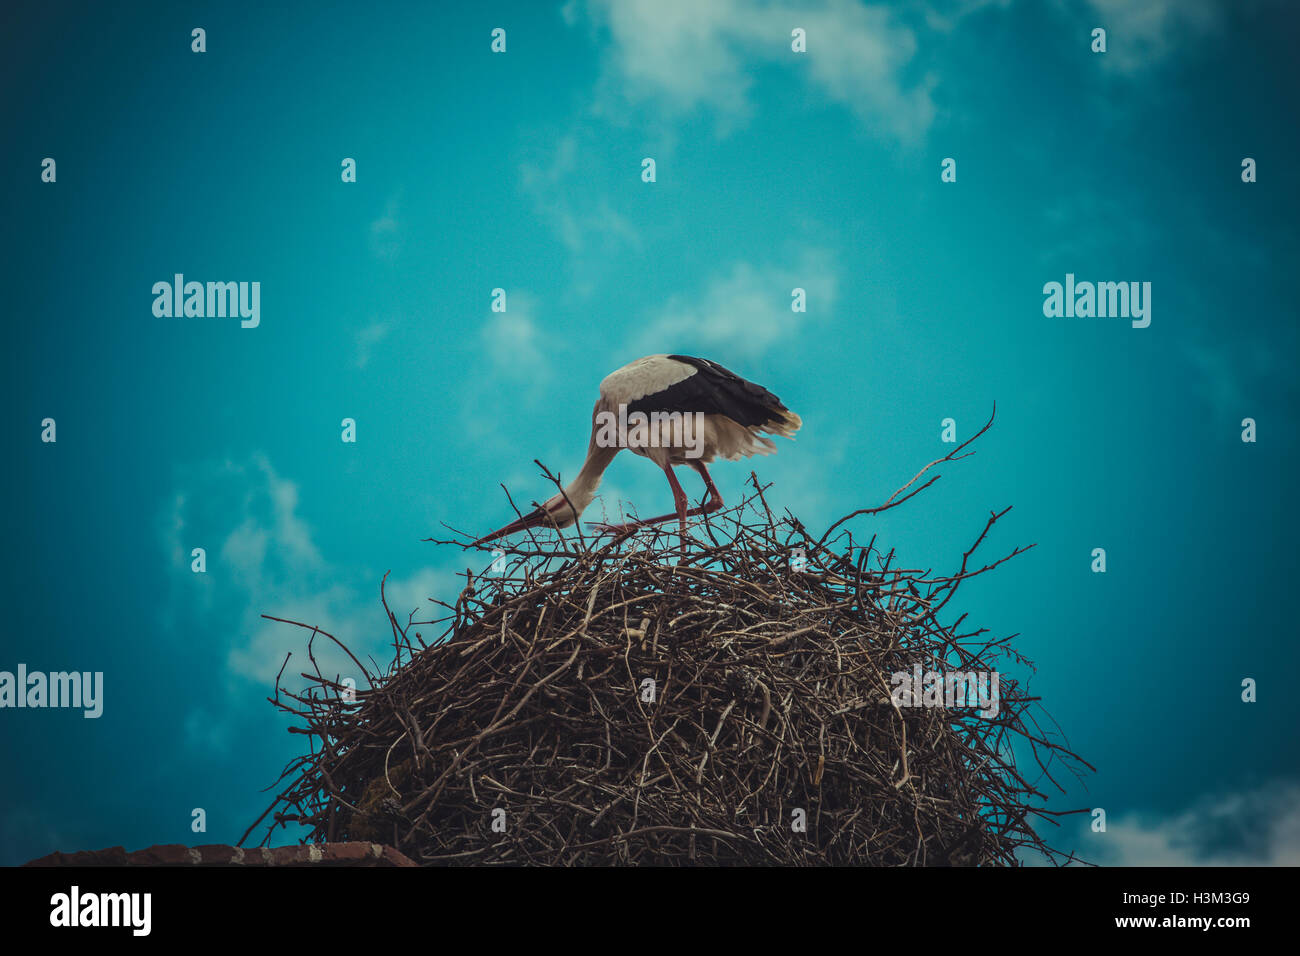 La procreación, nidos de cigüeña hizo ∩∩┐┐╜╜╜∩┐∩┐╜╜∩┐∩┐╜de ramas de árboles a lo largo de blue sk Foto de stock